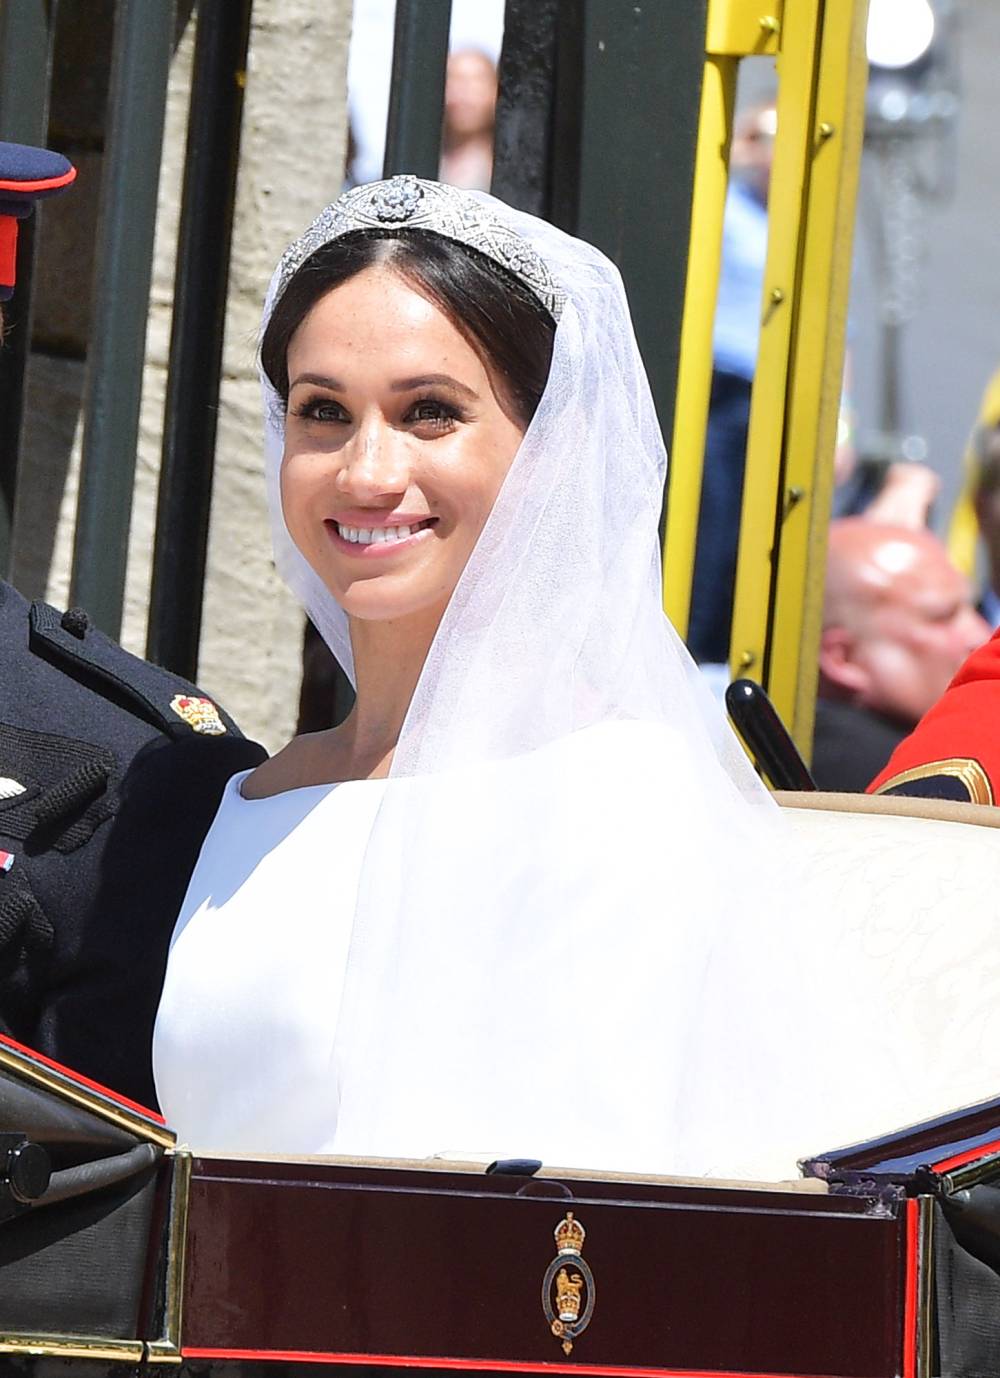 Duchess Meghan's Makeup Artist Spills New Details About Her Wedding Day Look